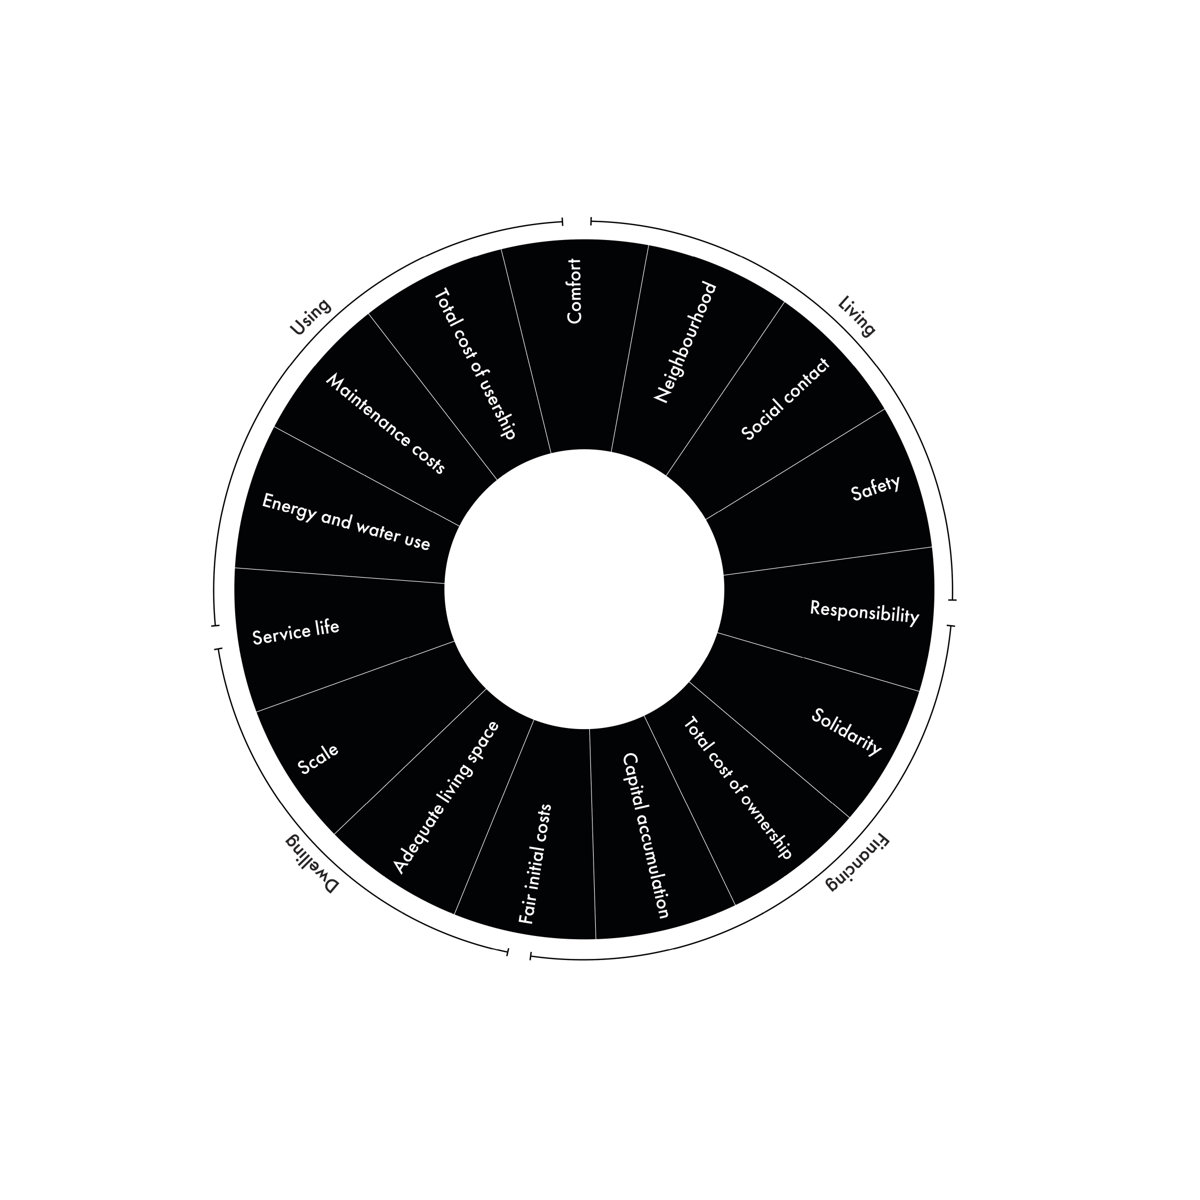 De vijftien dimensies van het circulaire bouwen (beeld Margaux Lespagnard-VUB)